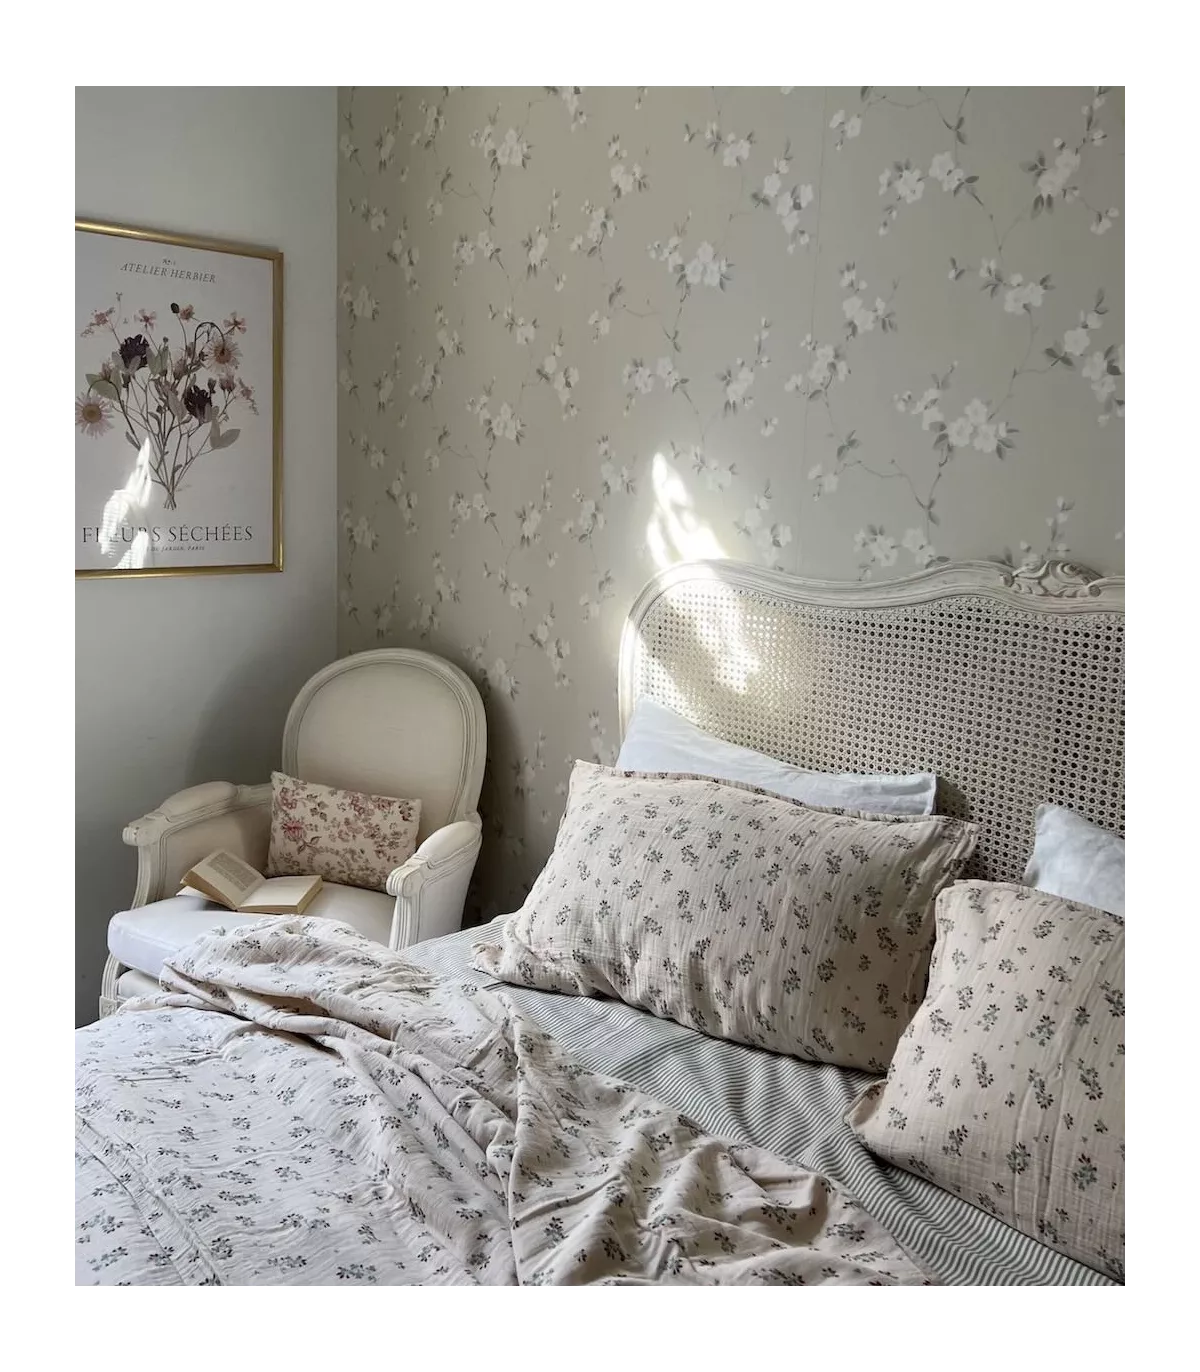 Cabecero blanco cama rejilla francesa (+ colores)